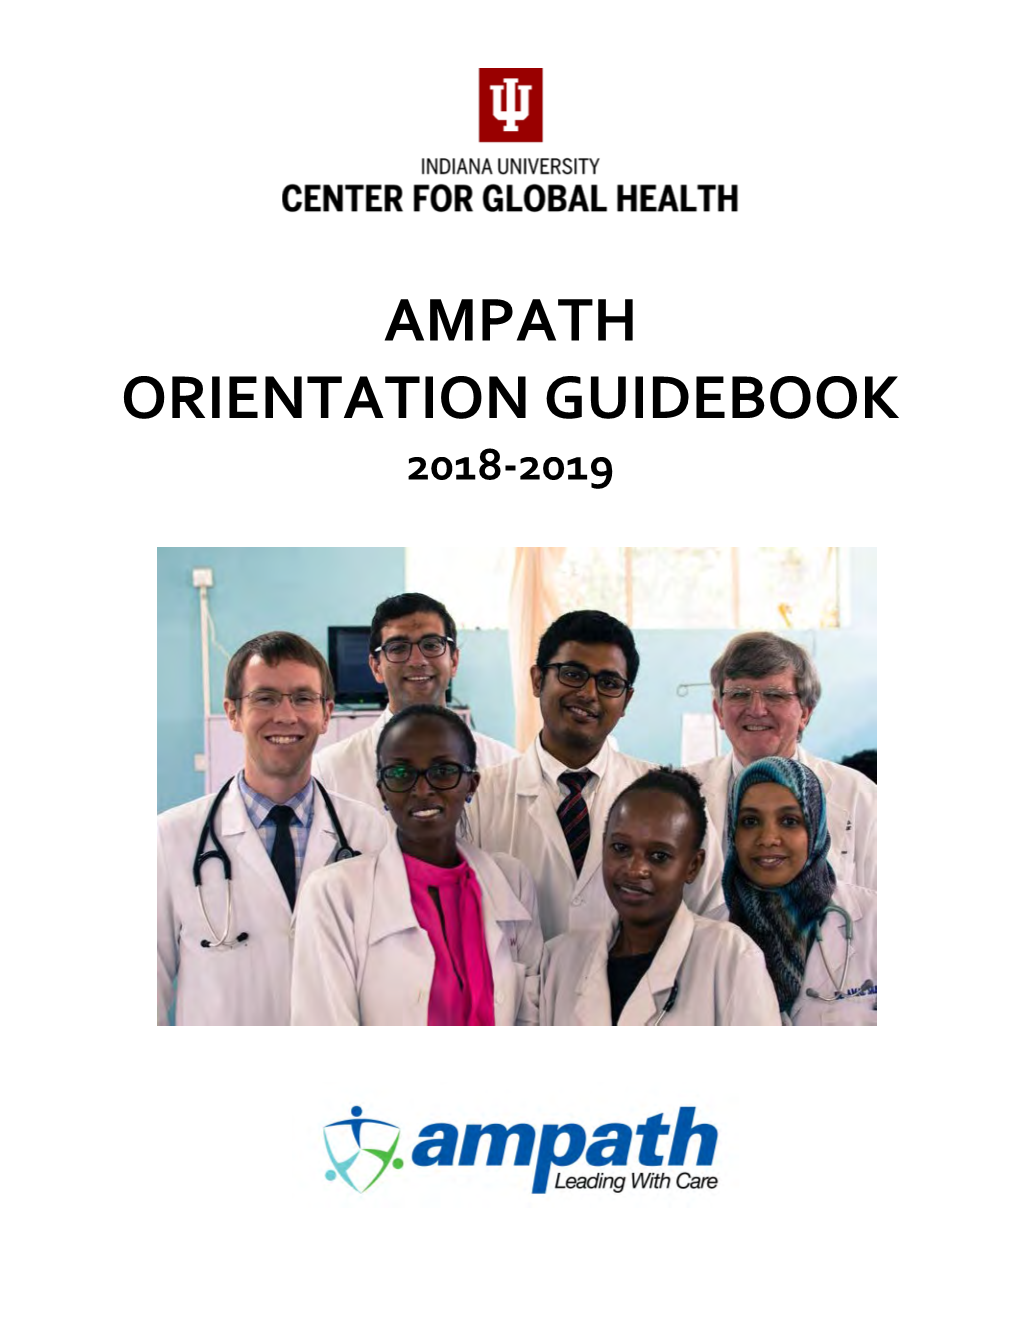 Ampath Orientation Guidebook 2018-2019